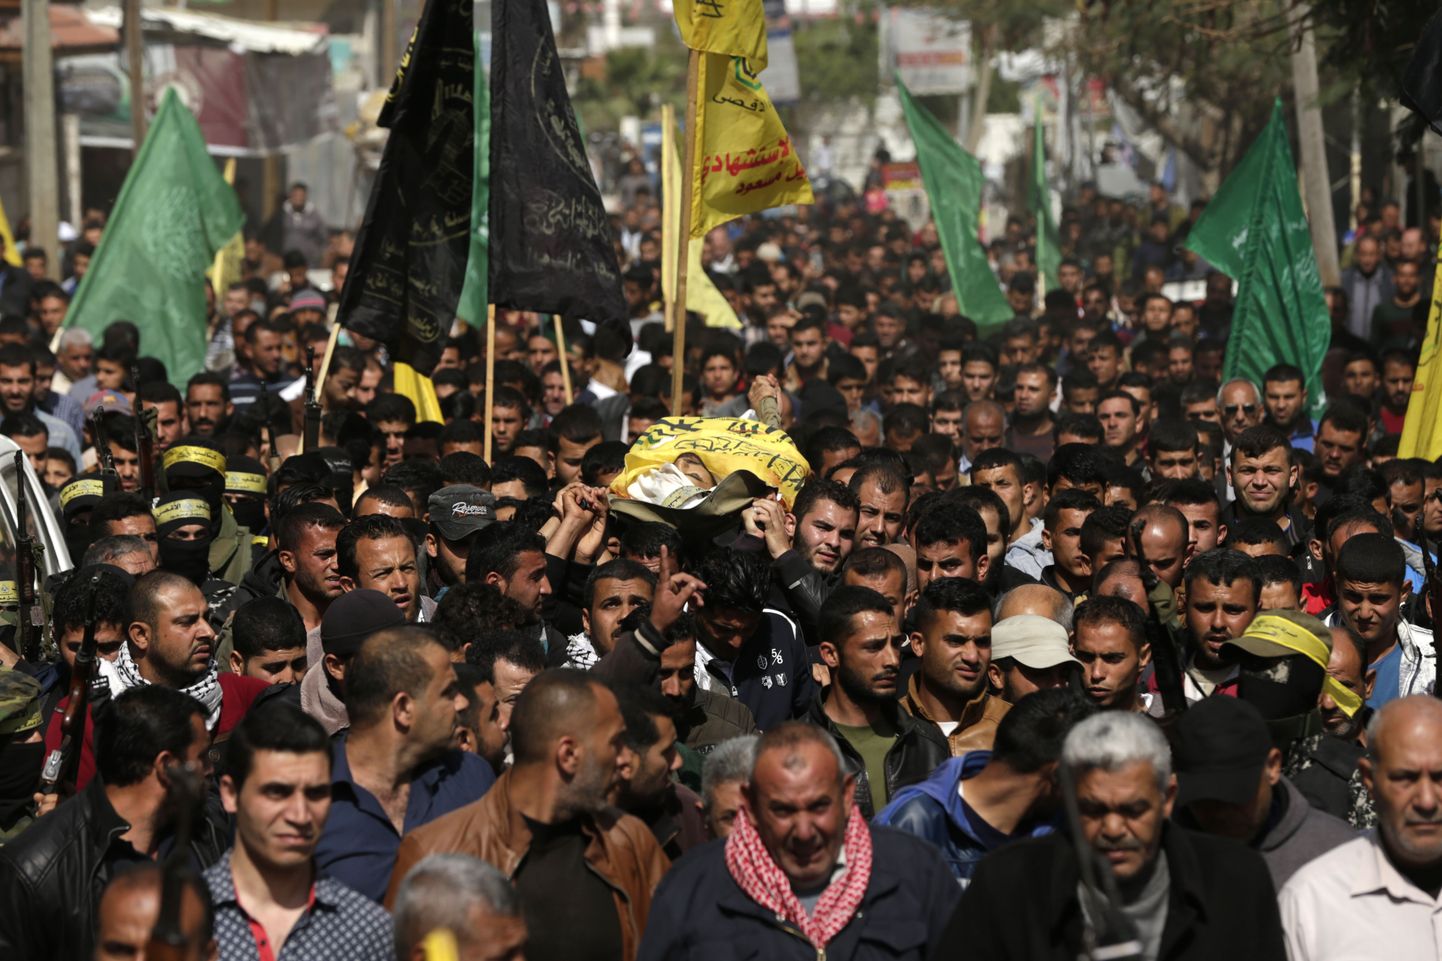 Reedestes kokkupõrgetes Iisraeli sõjaväega surma saanud Hamdan Abu Amsha matustele Gazas kogunes tuhandeid palestiinlasi. Meeleavalduste käigus sai kokku surma 16 palestiinlast.